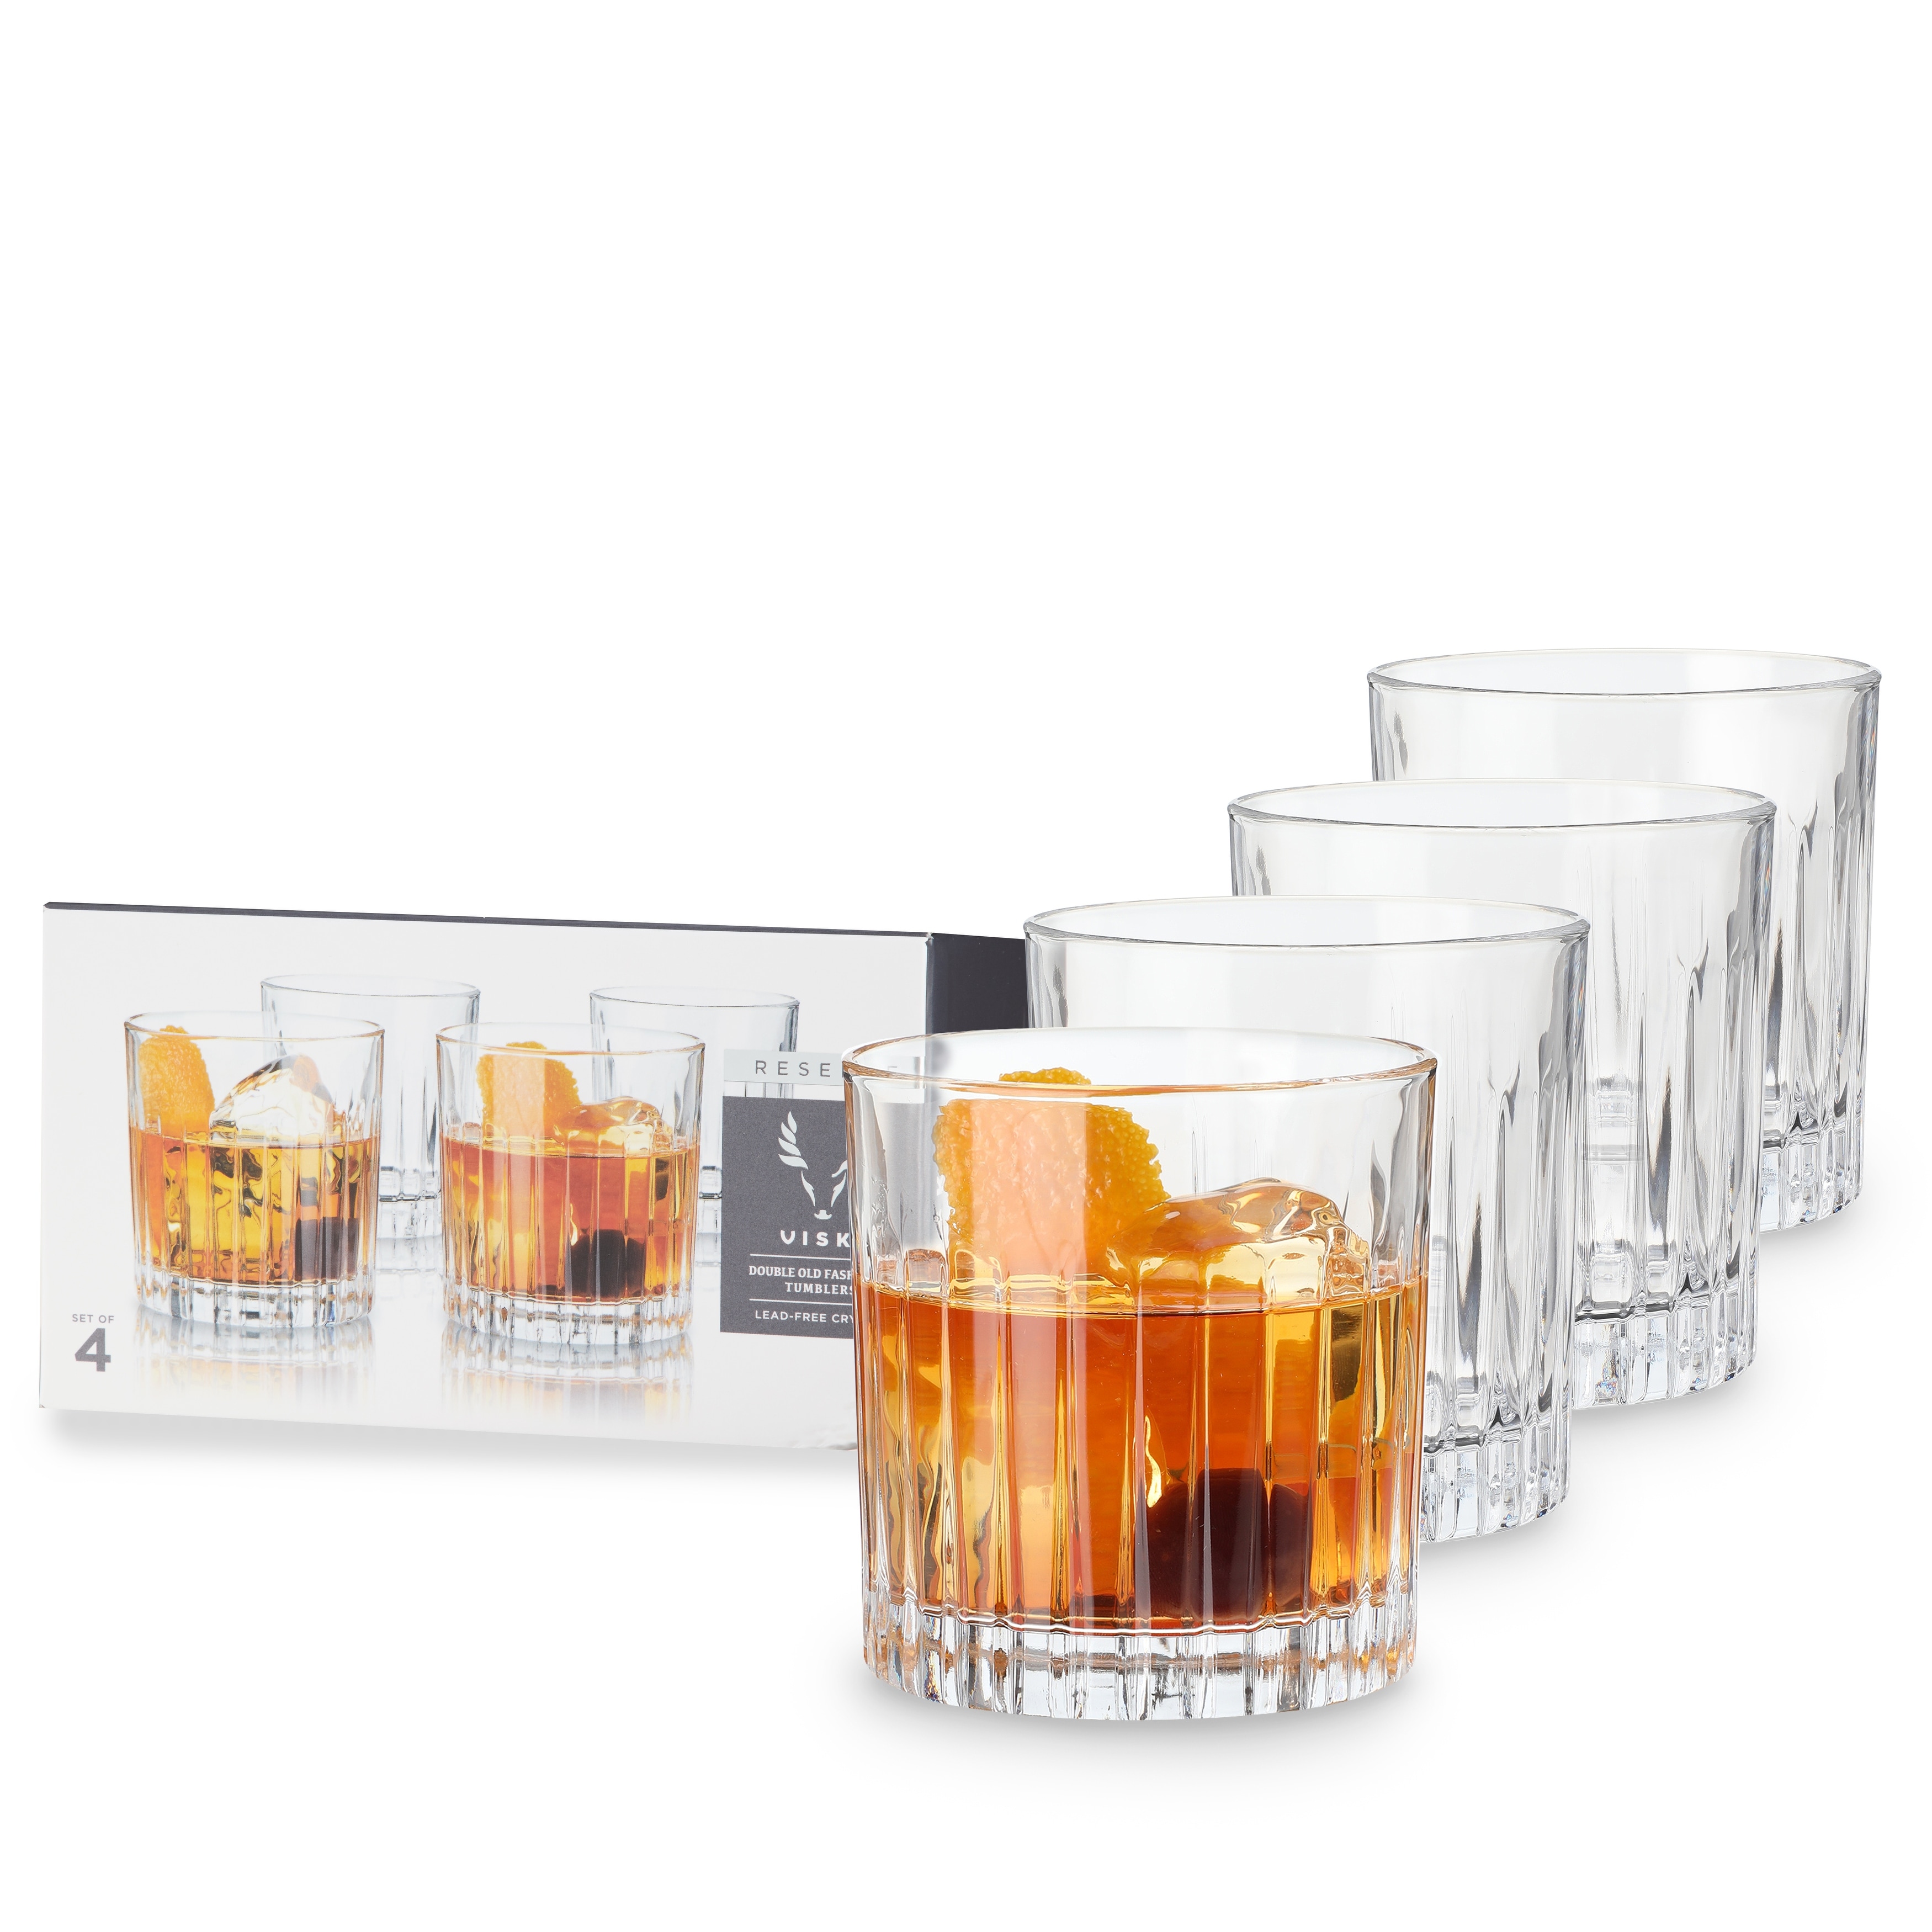 Whiskey glasses, Cocktail glasses set of 12 